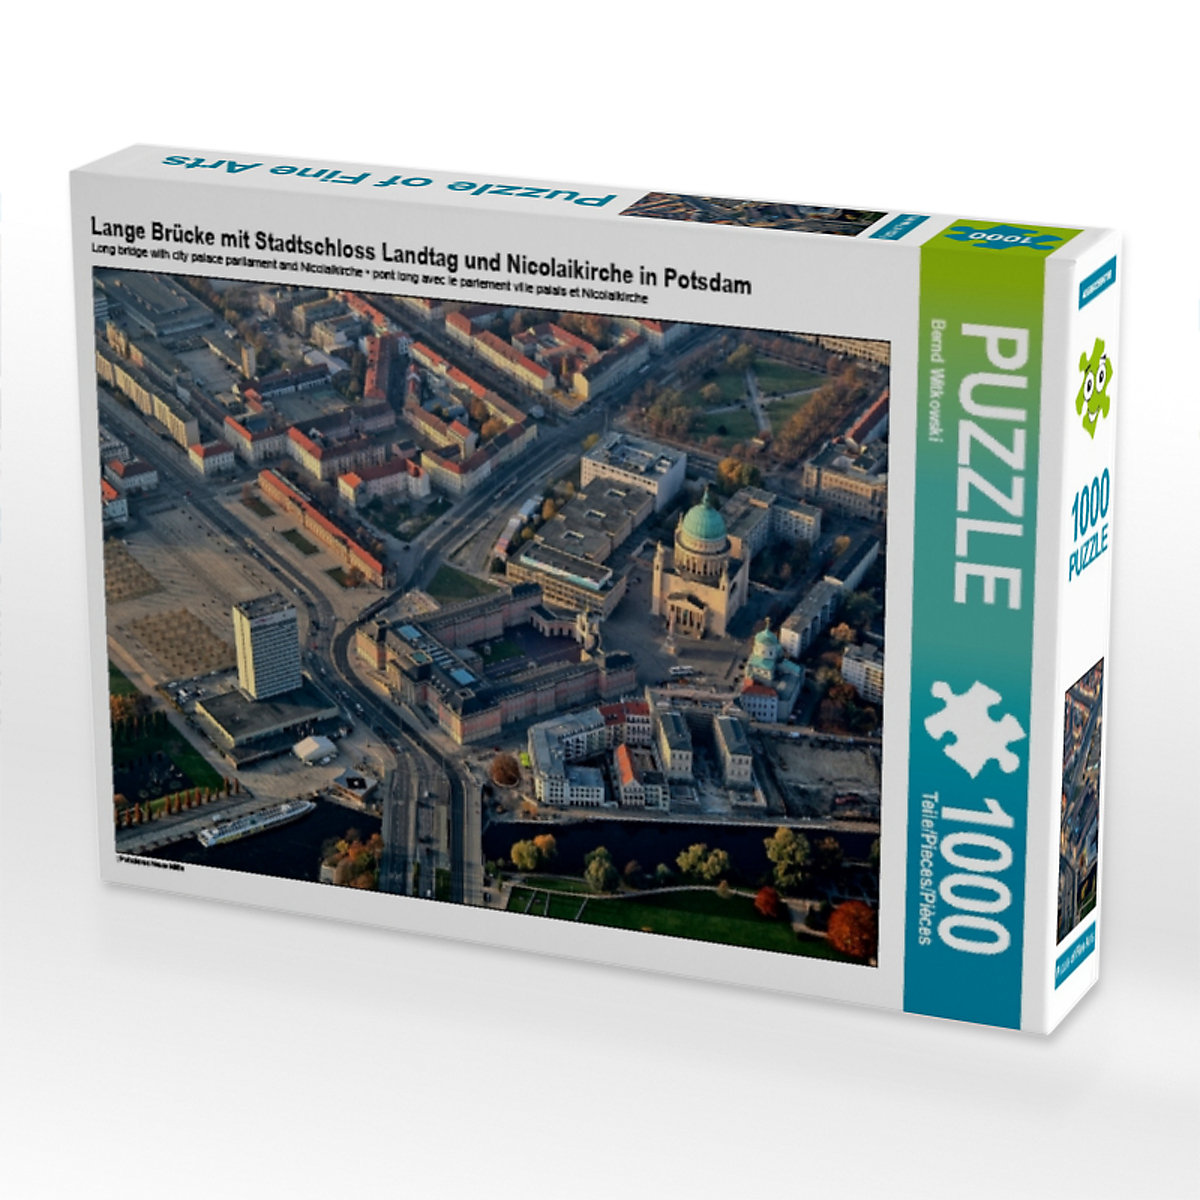 CALVENDO® Puzzle CALVENDO Puzzle Lange Brücke mit Stadtschloss Landtag und Nicolaikirche in Potsdam 1000 Teile Foto-Puzzle für glückliche Stunden